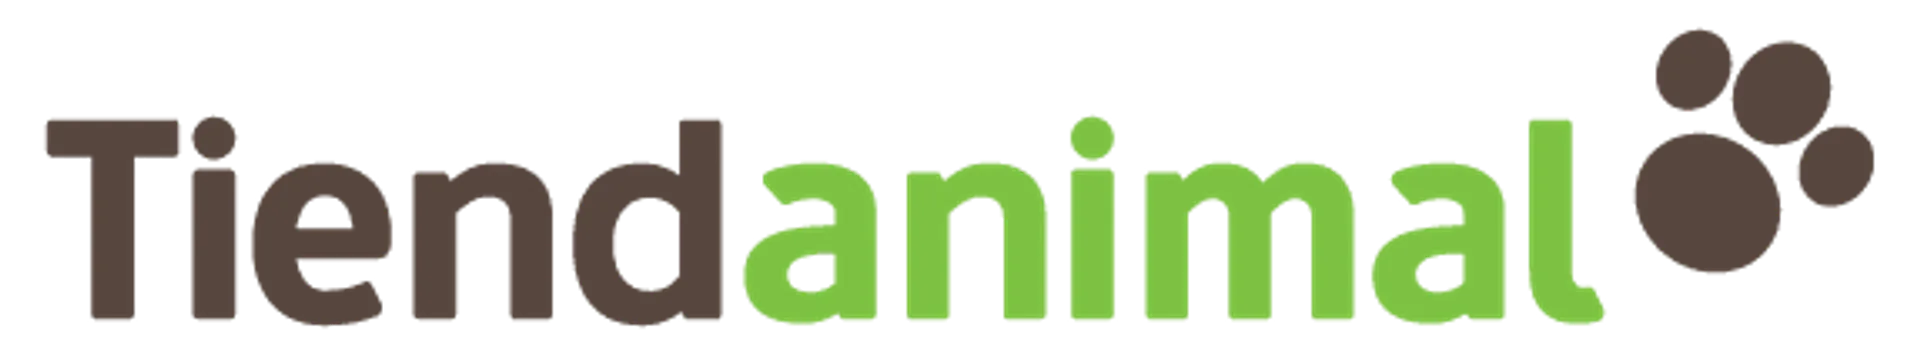 Tiendanimal logo